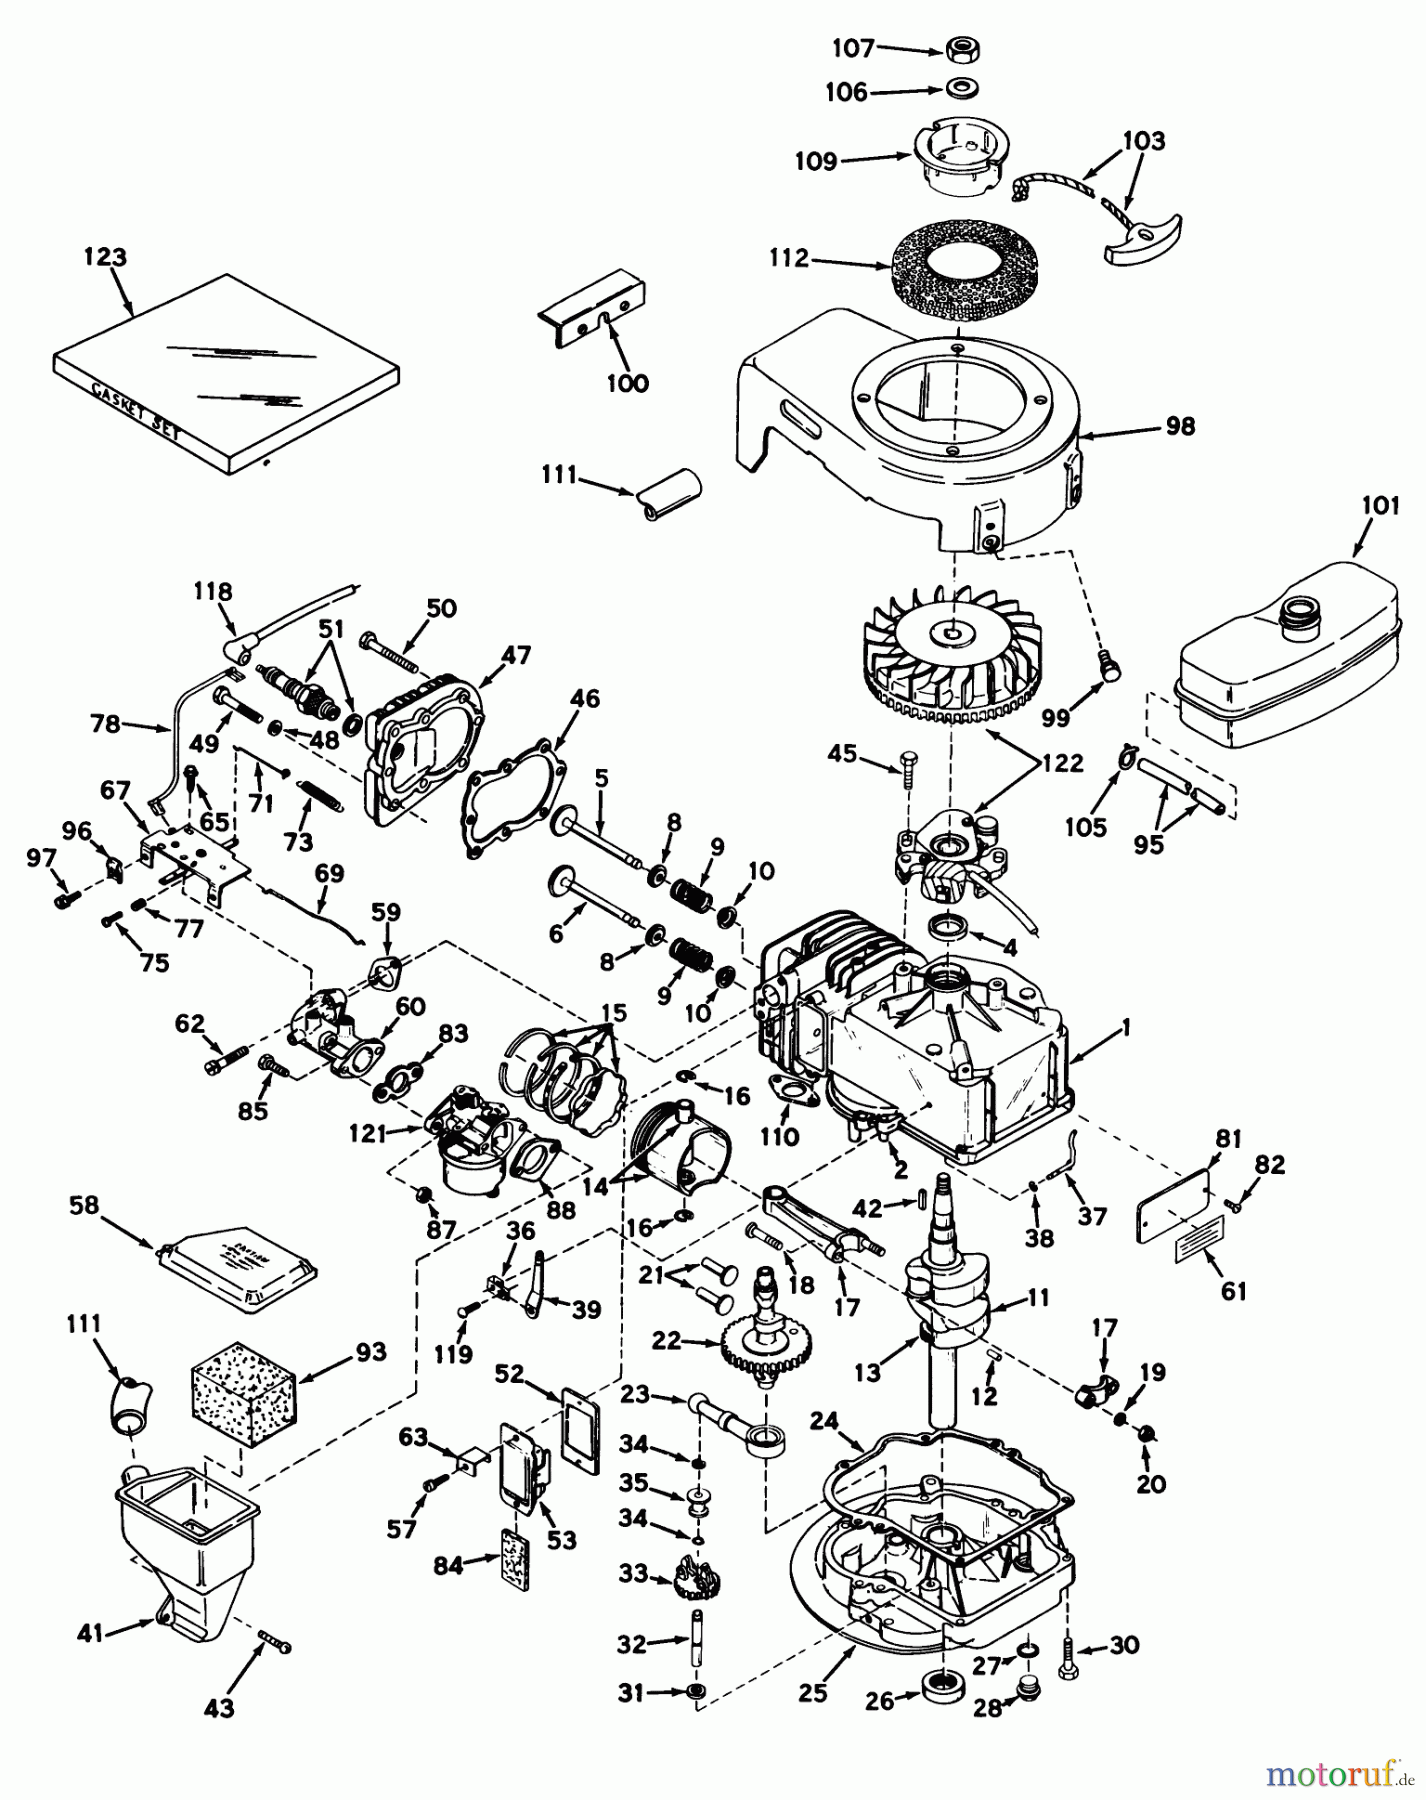  Toro Neu Mowers, Walk-Behind Seite 2 21104 - Toro Whirlwind Lawnmower, 1970 (0000001-0999999) ENGINE MODEL LAV35-40534H